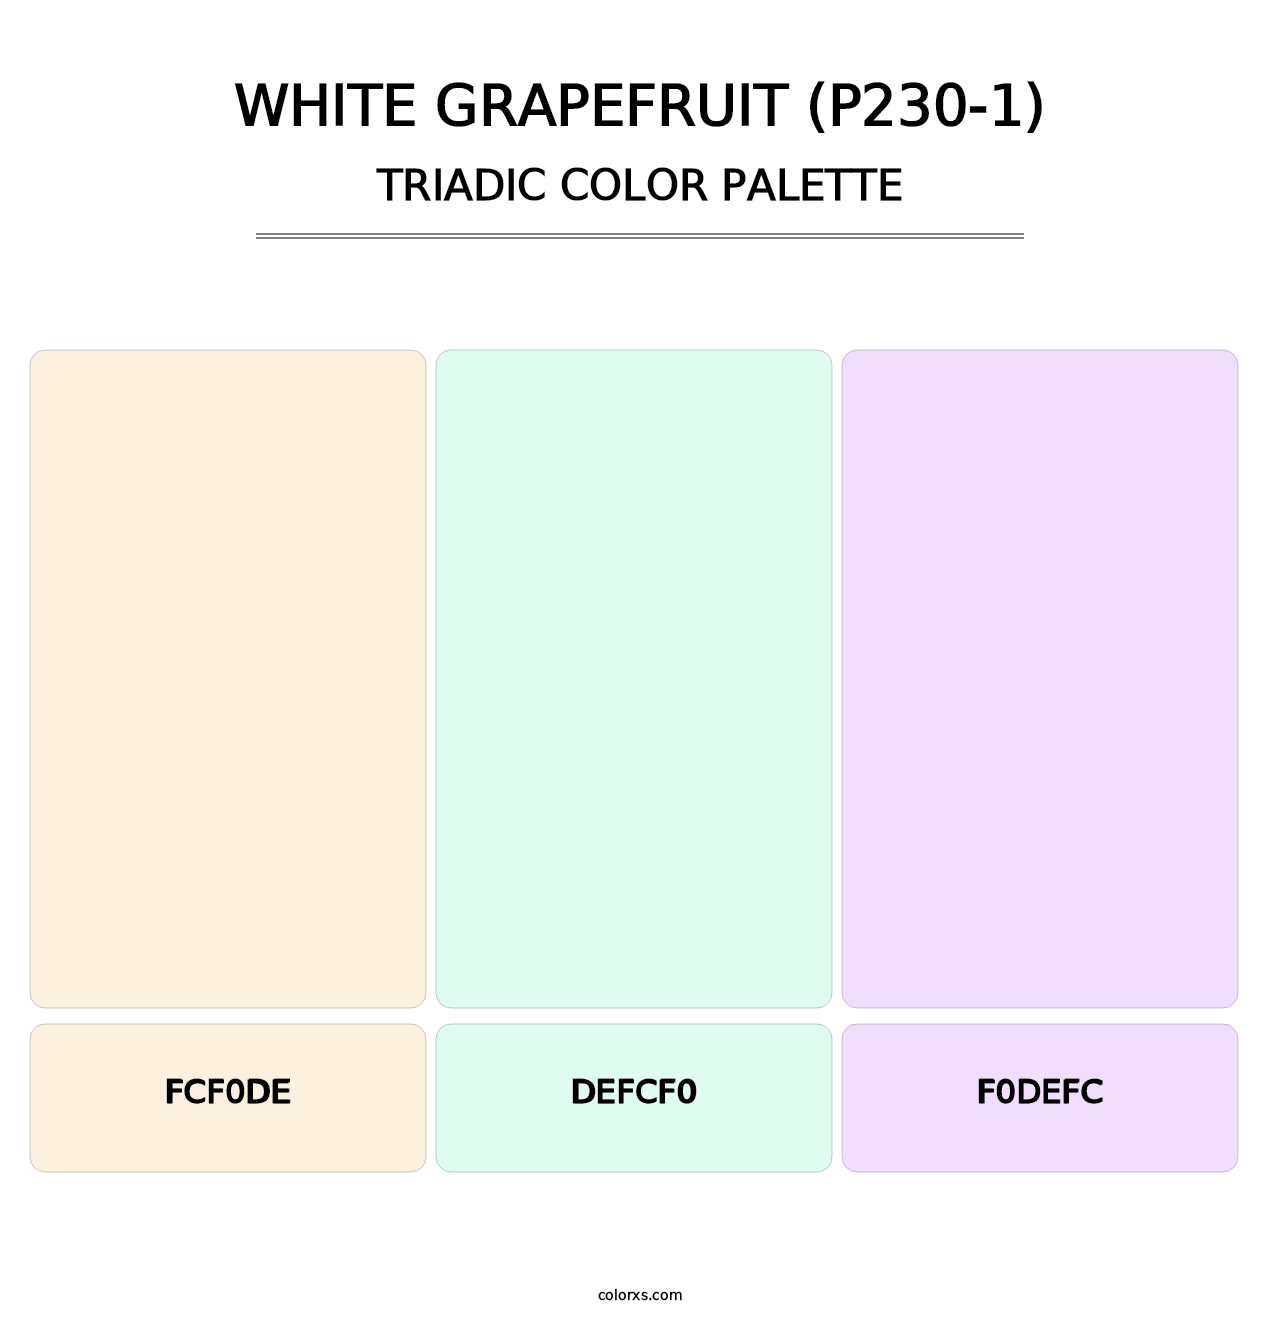 White Grapefruit (P230-1) - Triadic Color Palette